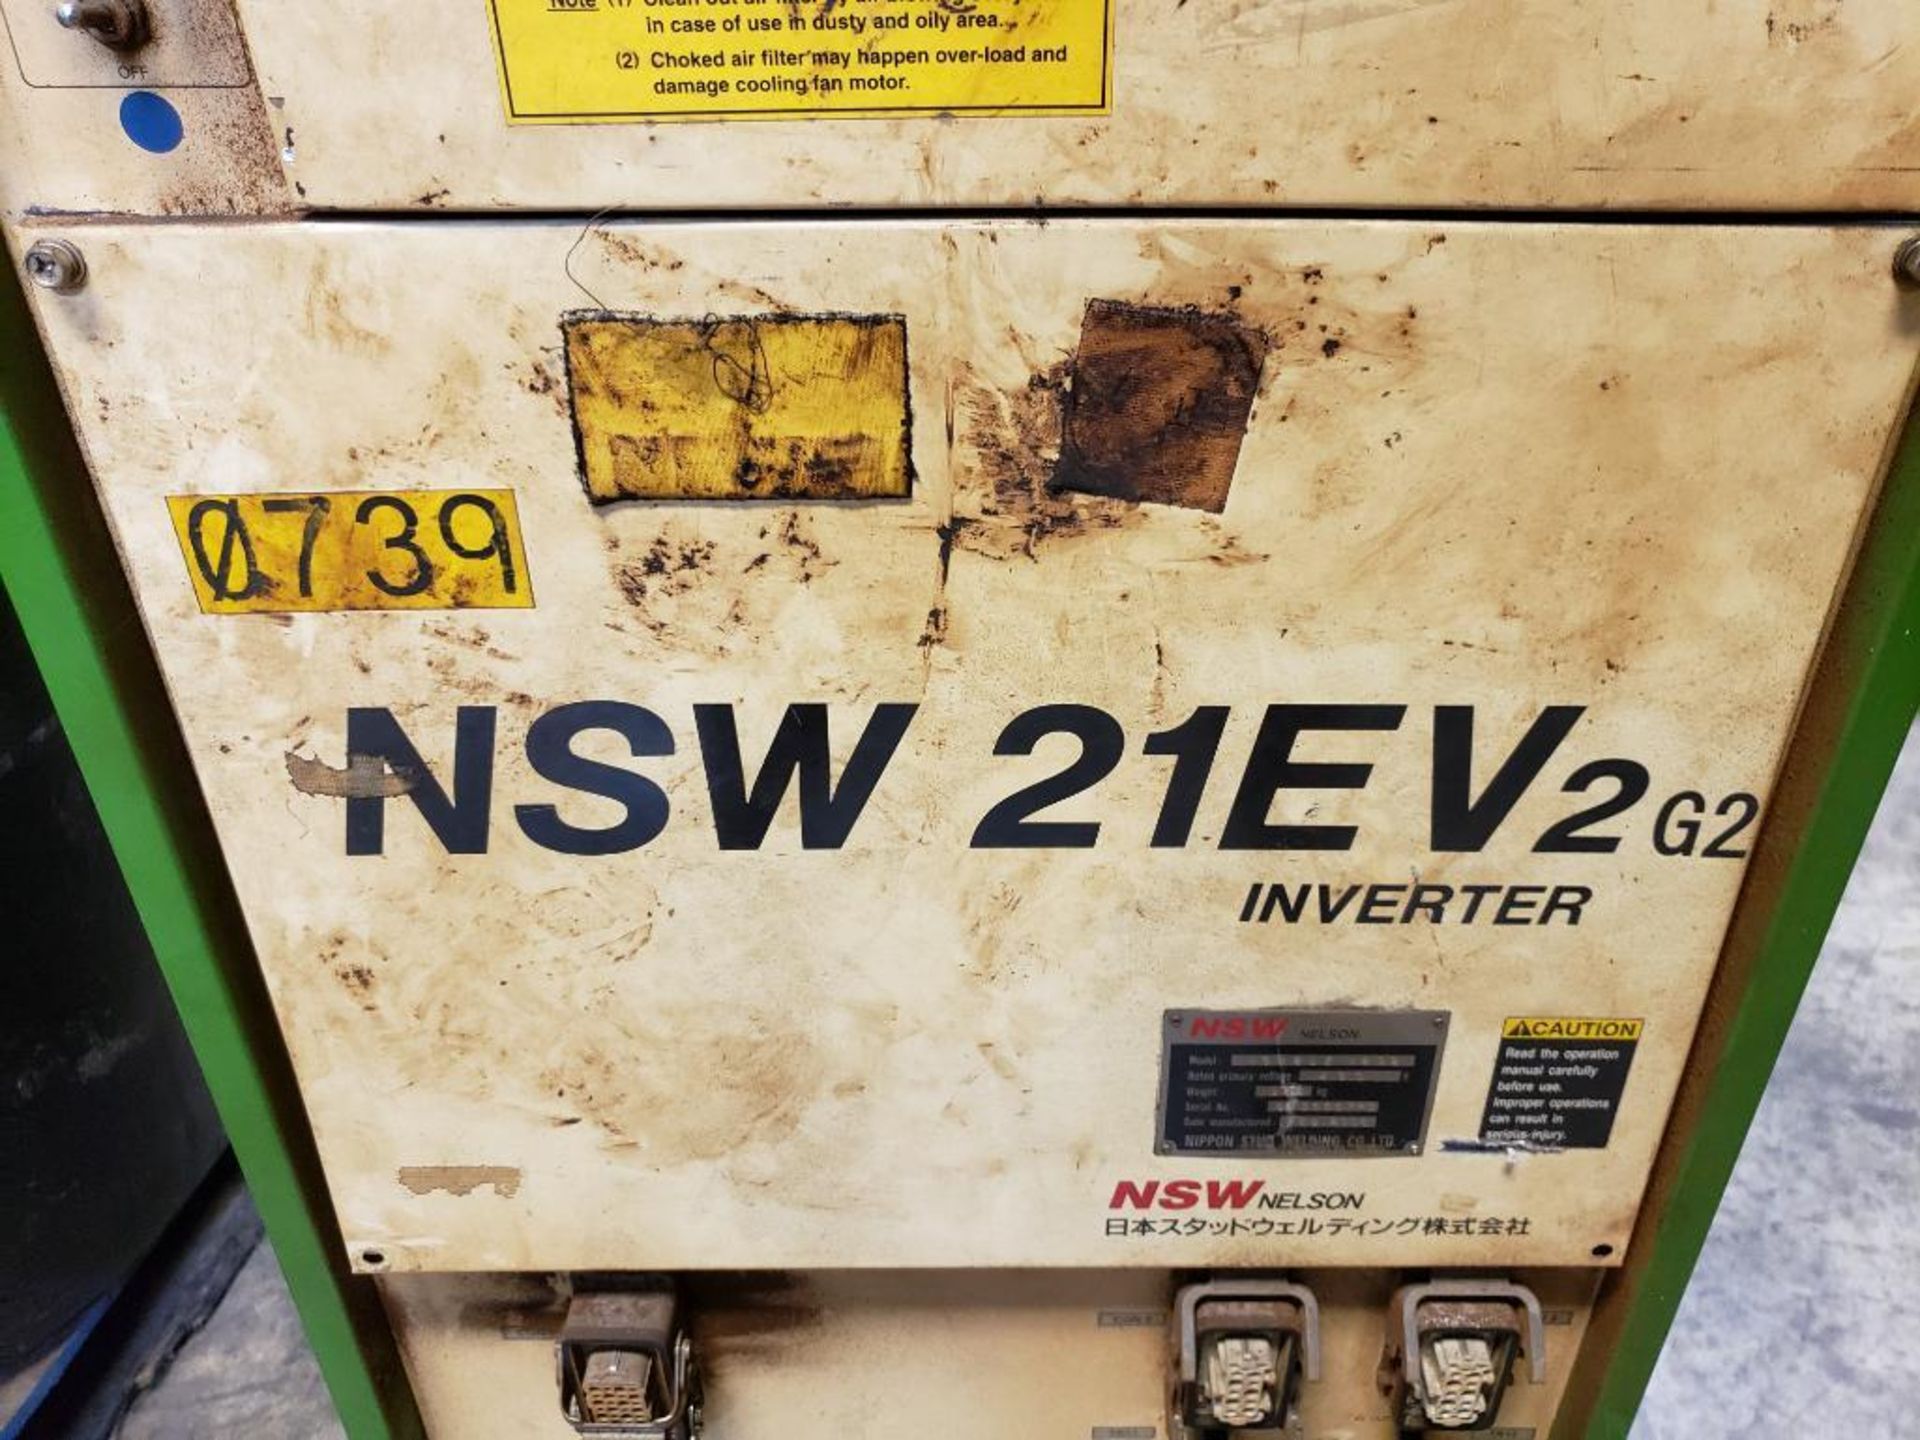 Nelson NSW stud welder controller. Model NSW-21EV2-G2. 3ph 480v. - Image 7 of 12